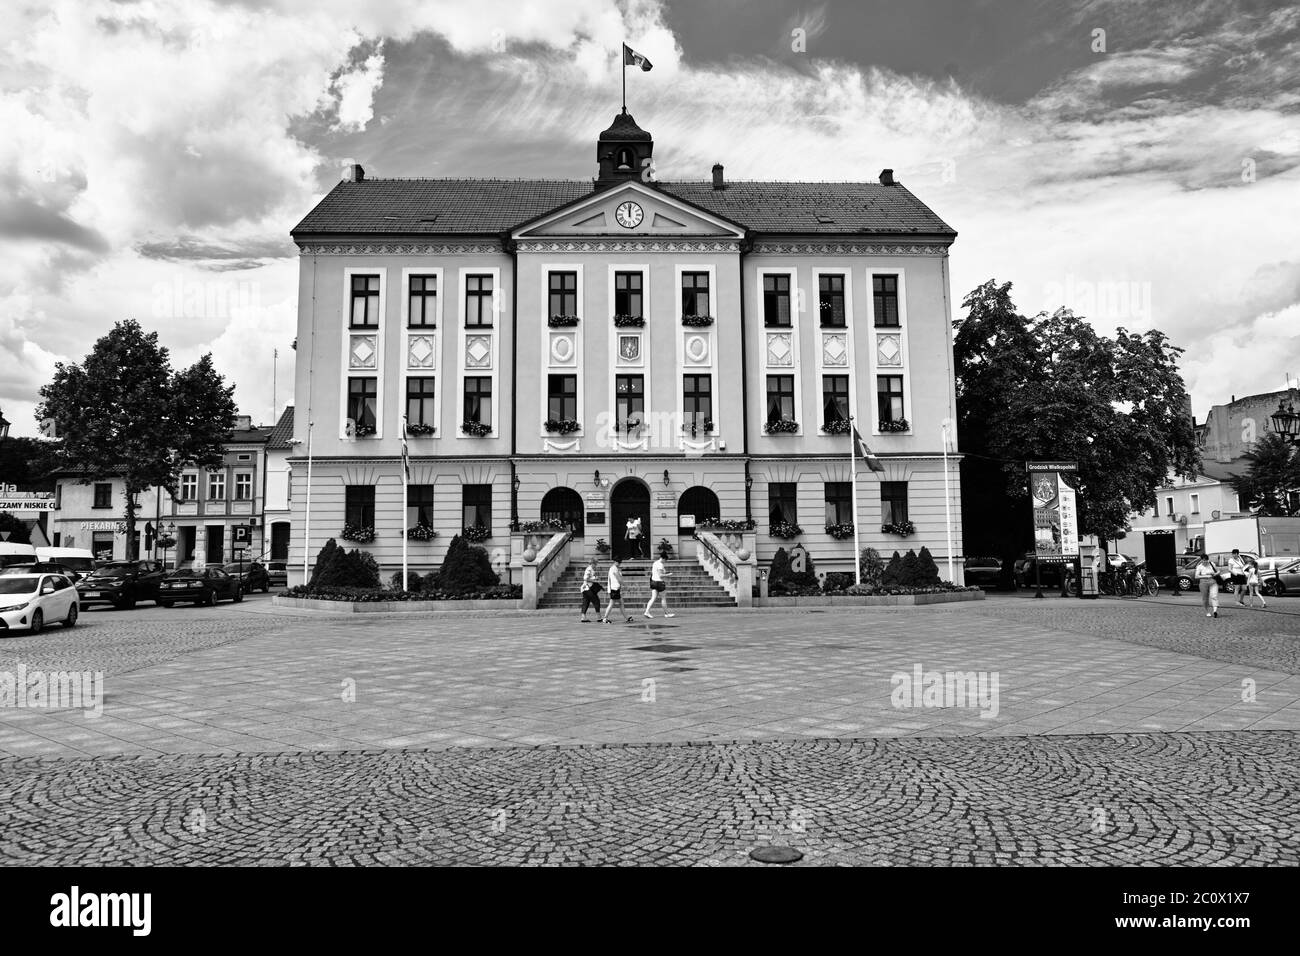 Schönes Architekturbeispiel in der polnischen Altstadt, Grodzisk Wielkopolski, Polen. Stockfoto